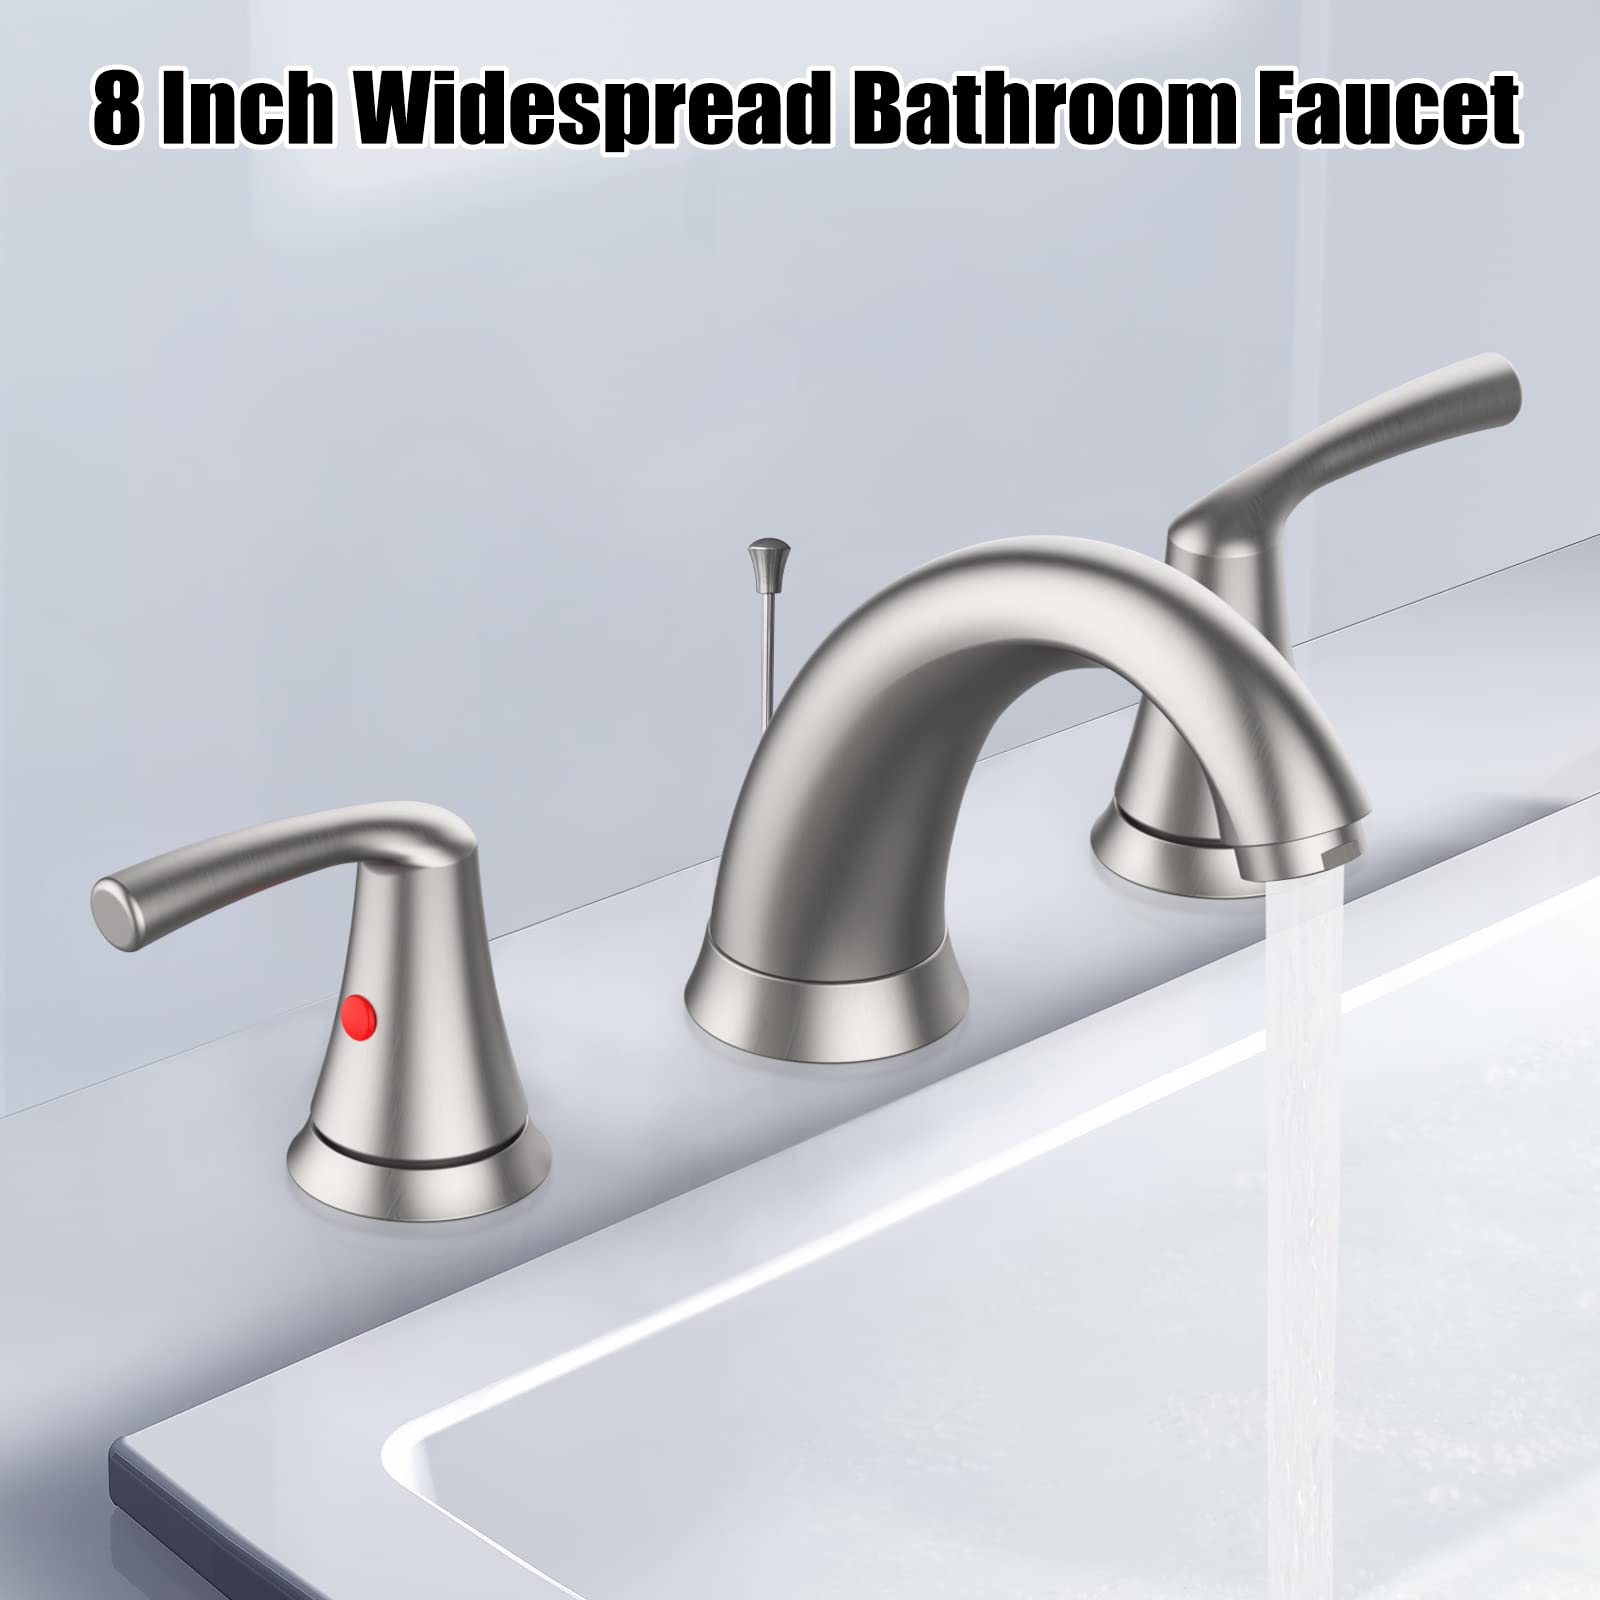 Bathroom Faucet 3 Hole 8 Inch Widespread Bathroom Faucet